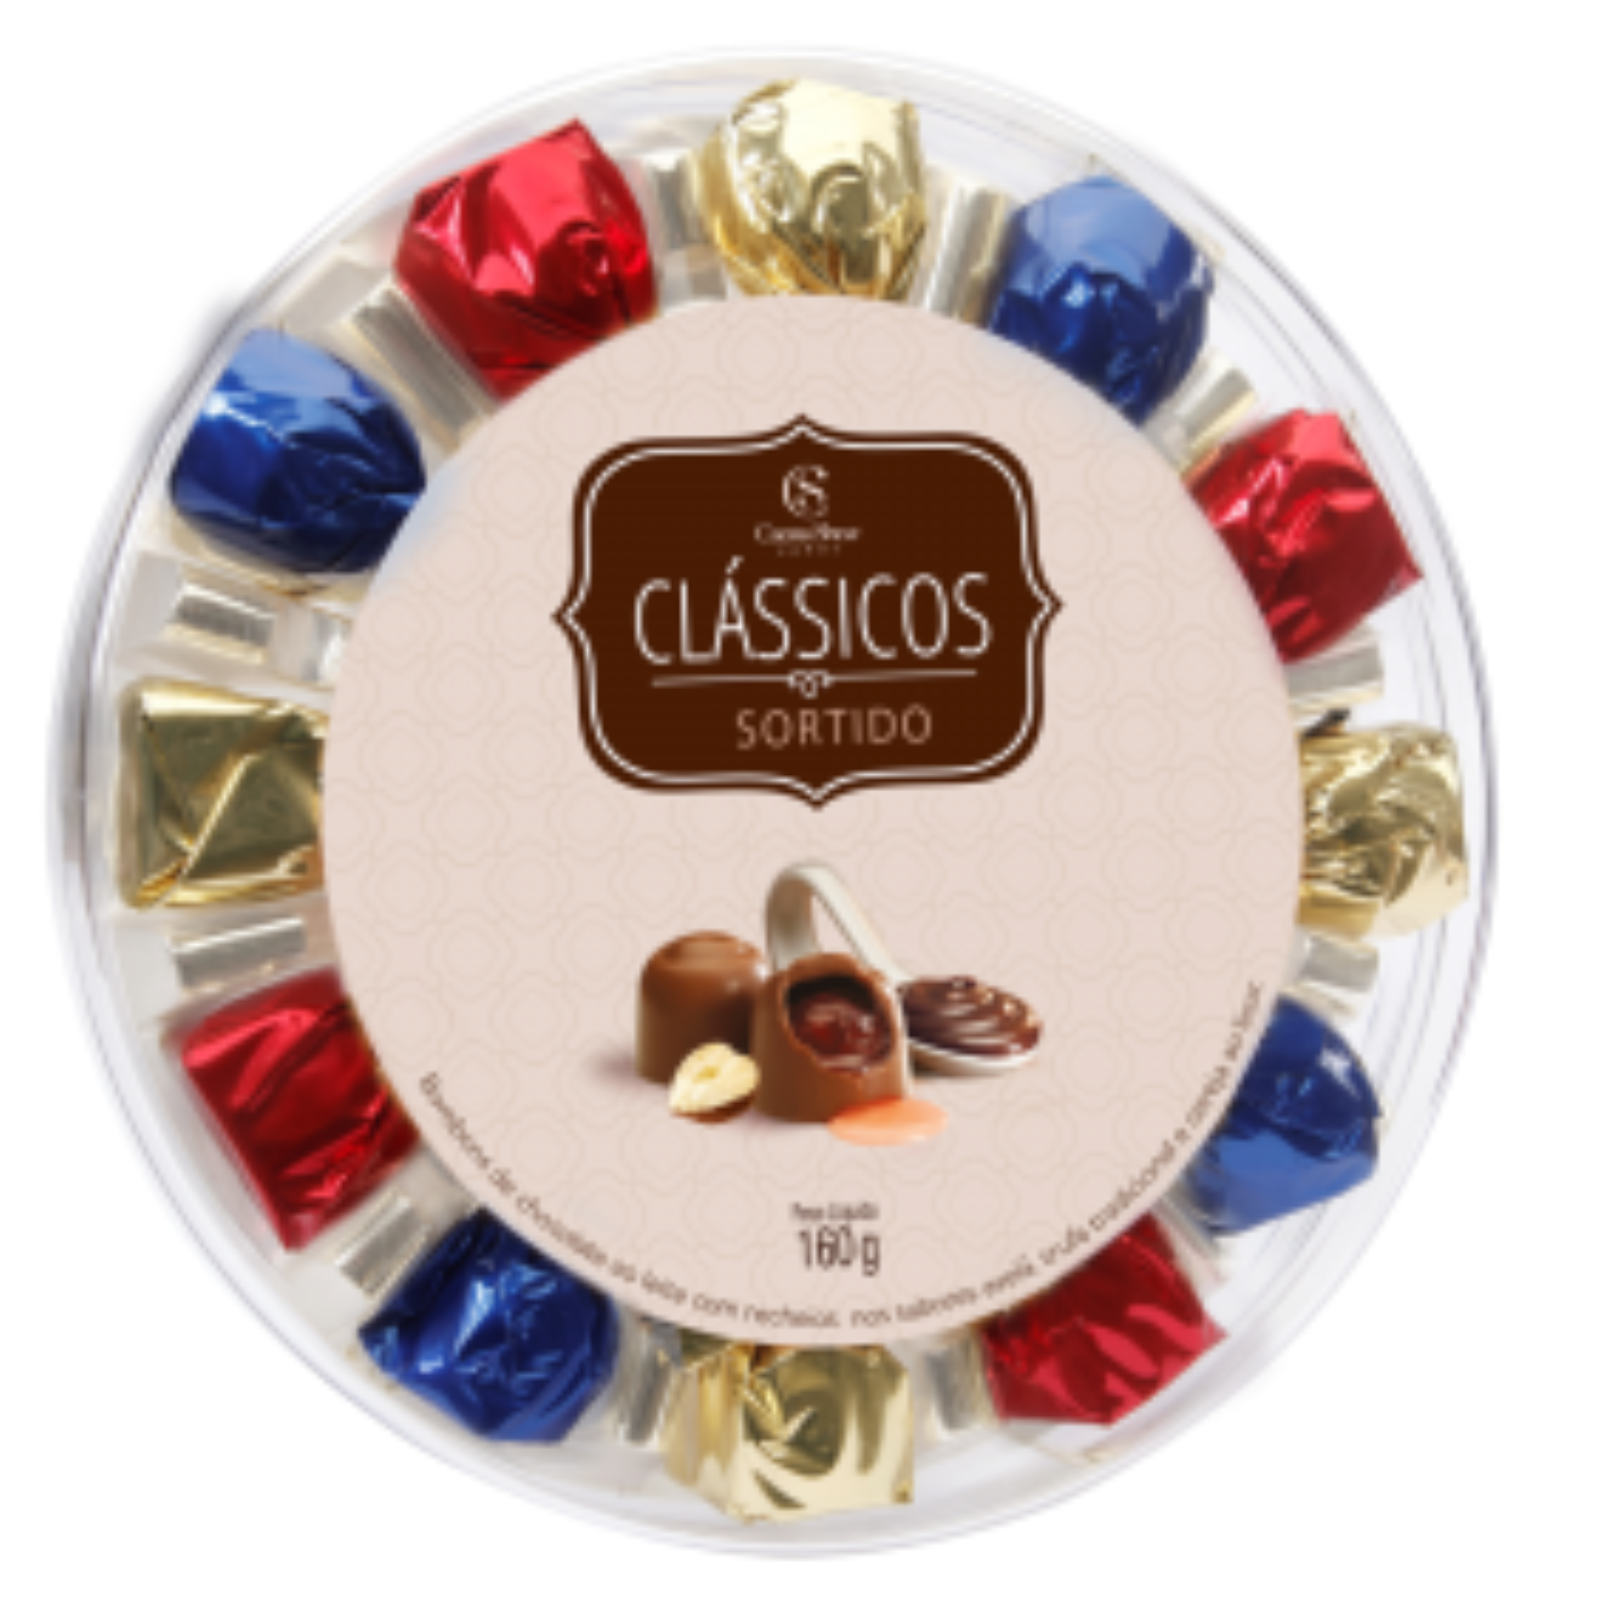 Chocolate clássicos golden gift sortidos